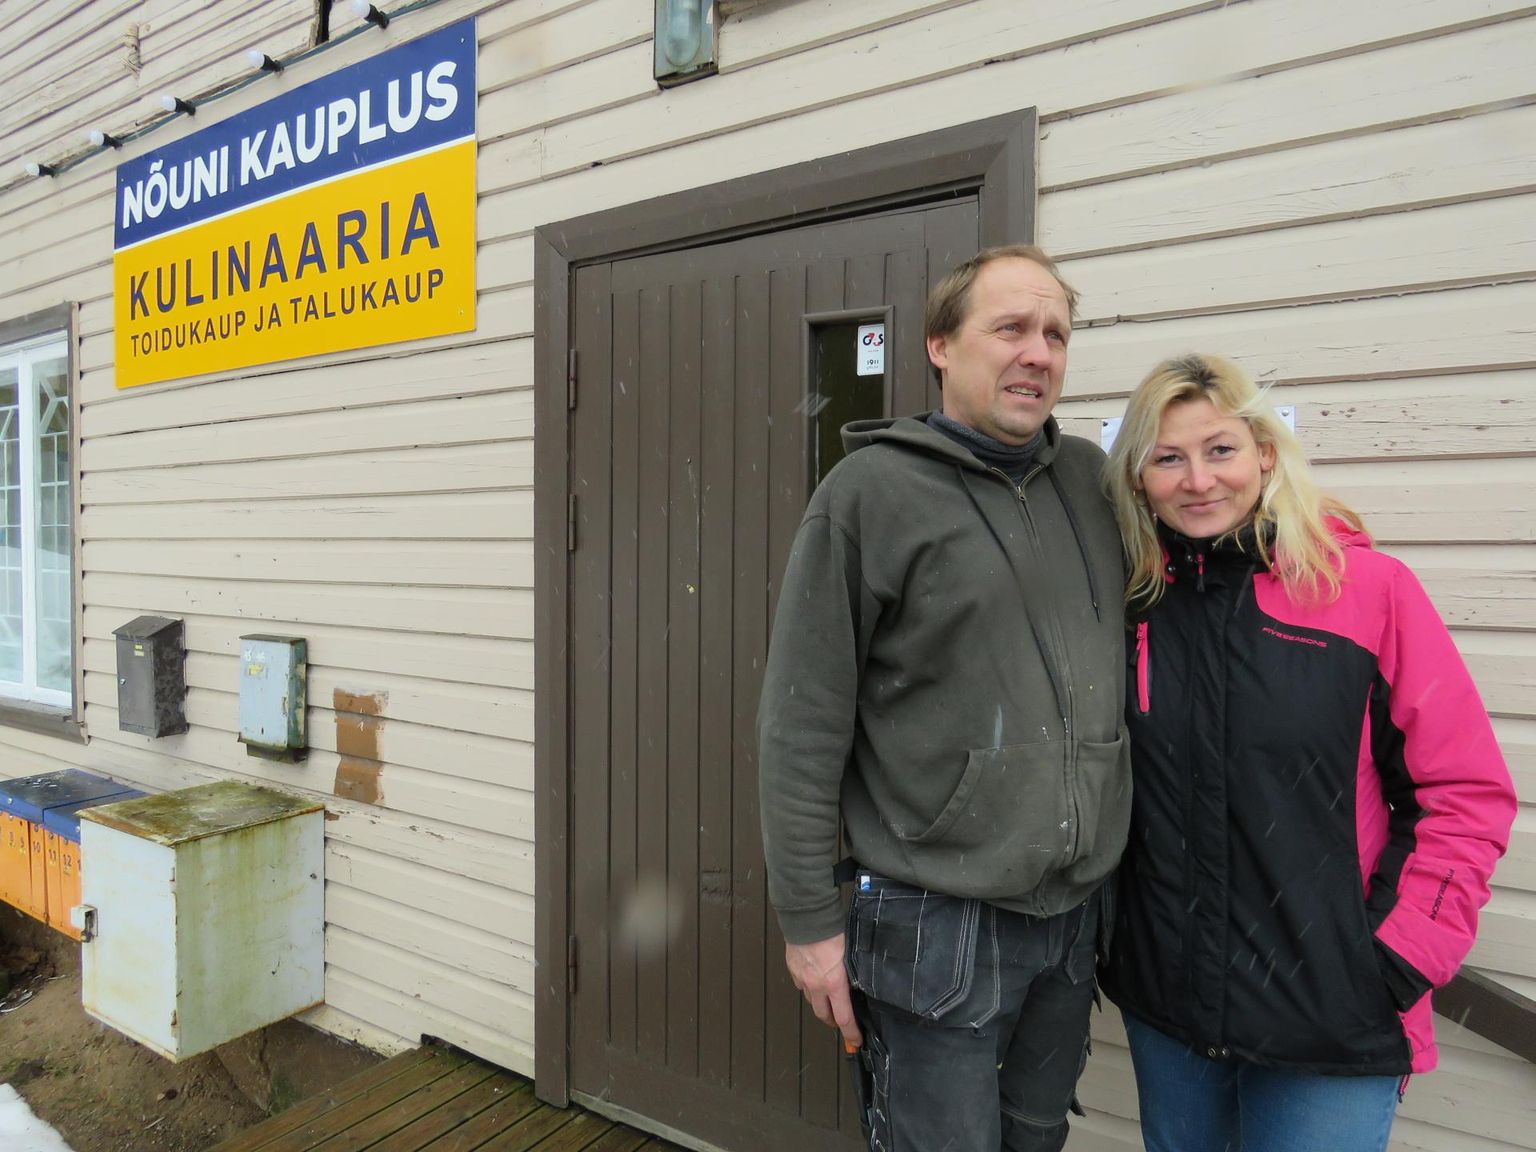 Kohalikud elanikud Kaimo Tamm ja Kristiina Palu hakkavad kodukandis pidama Nõuni kauplust. Praegu käivad veel ettevalmistused, pood avab uksed veebruari jooksul.